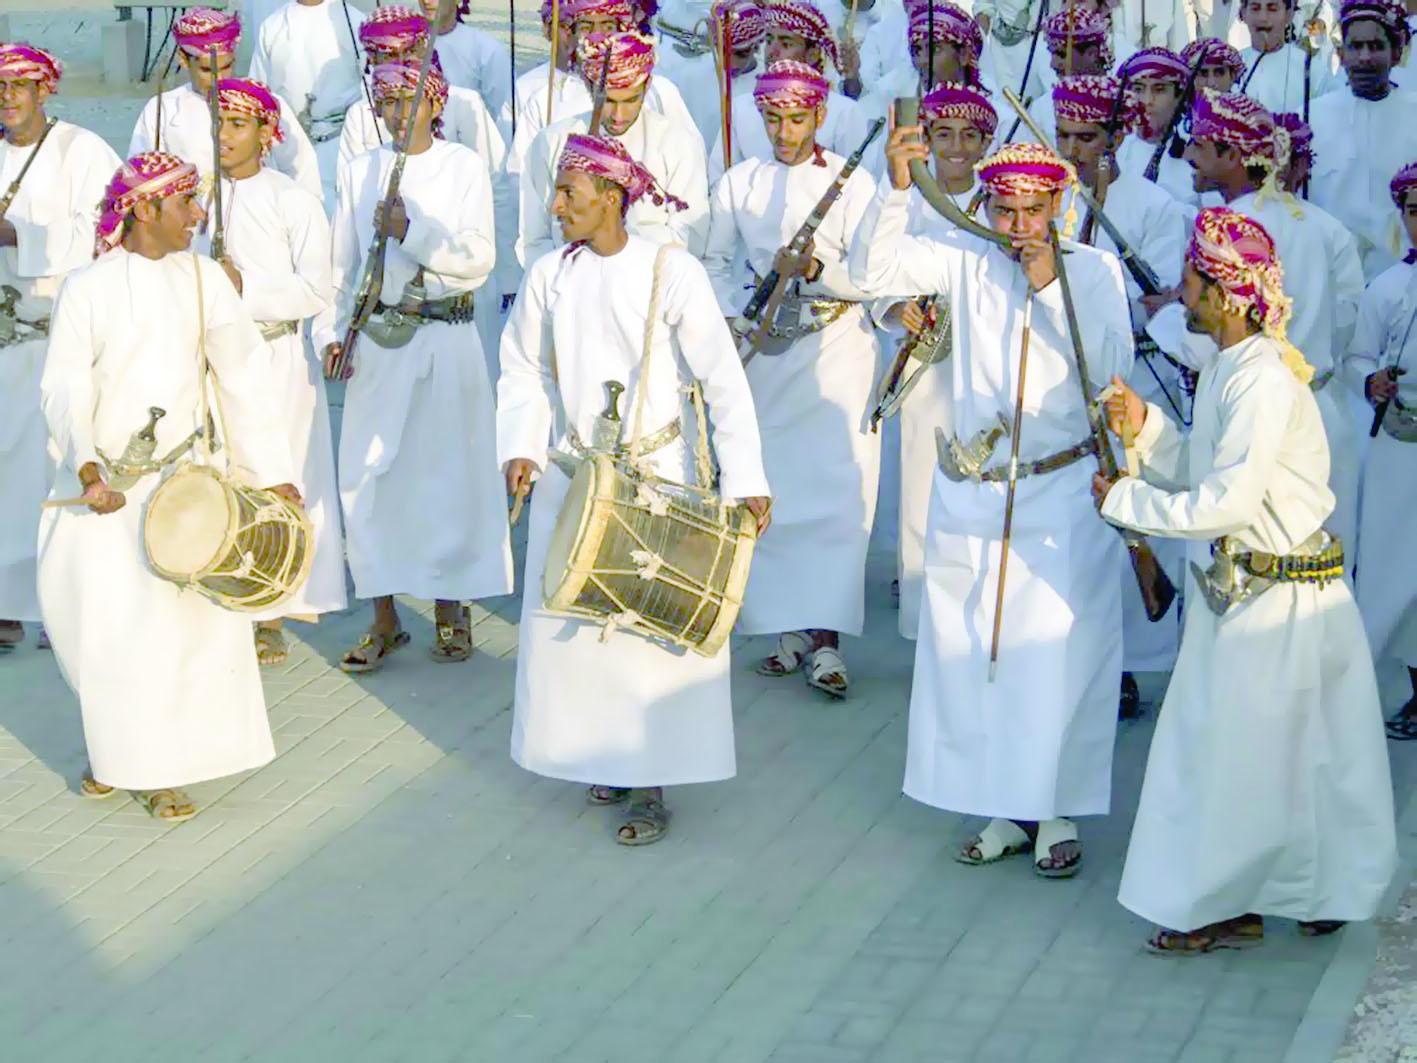 حصر الممارسين للموسيقى التقليدية العمانية